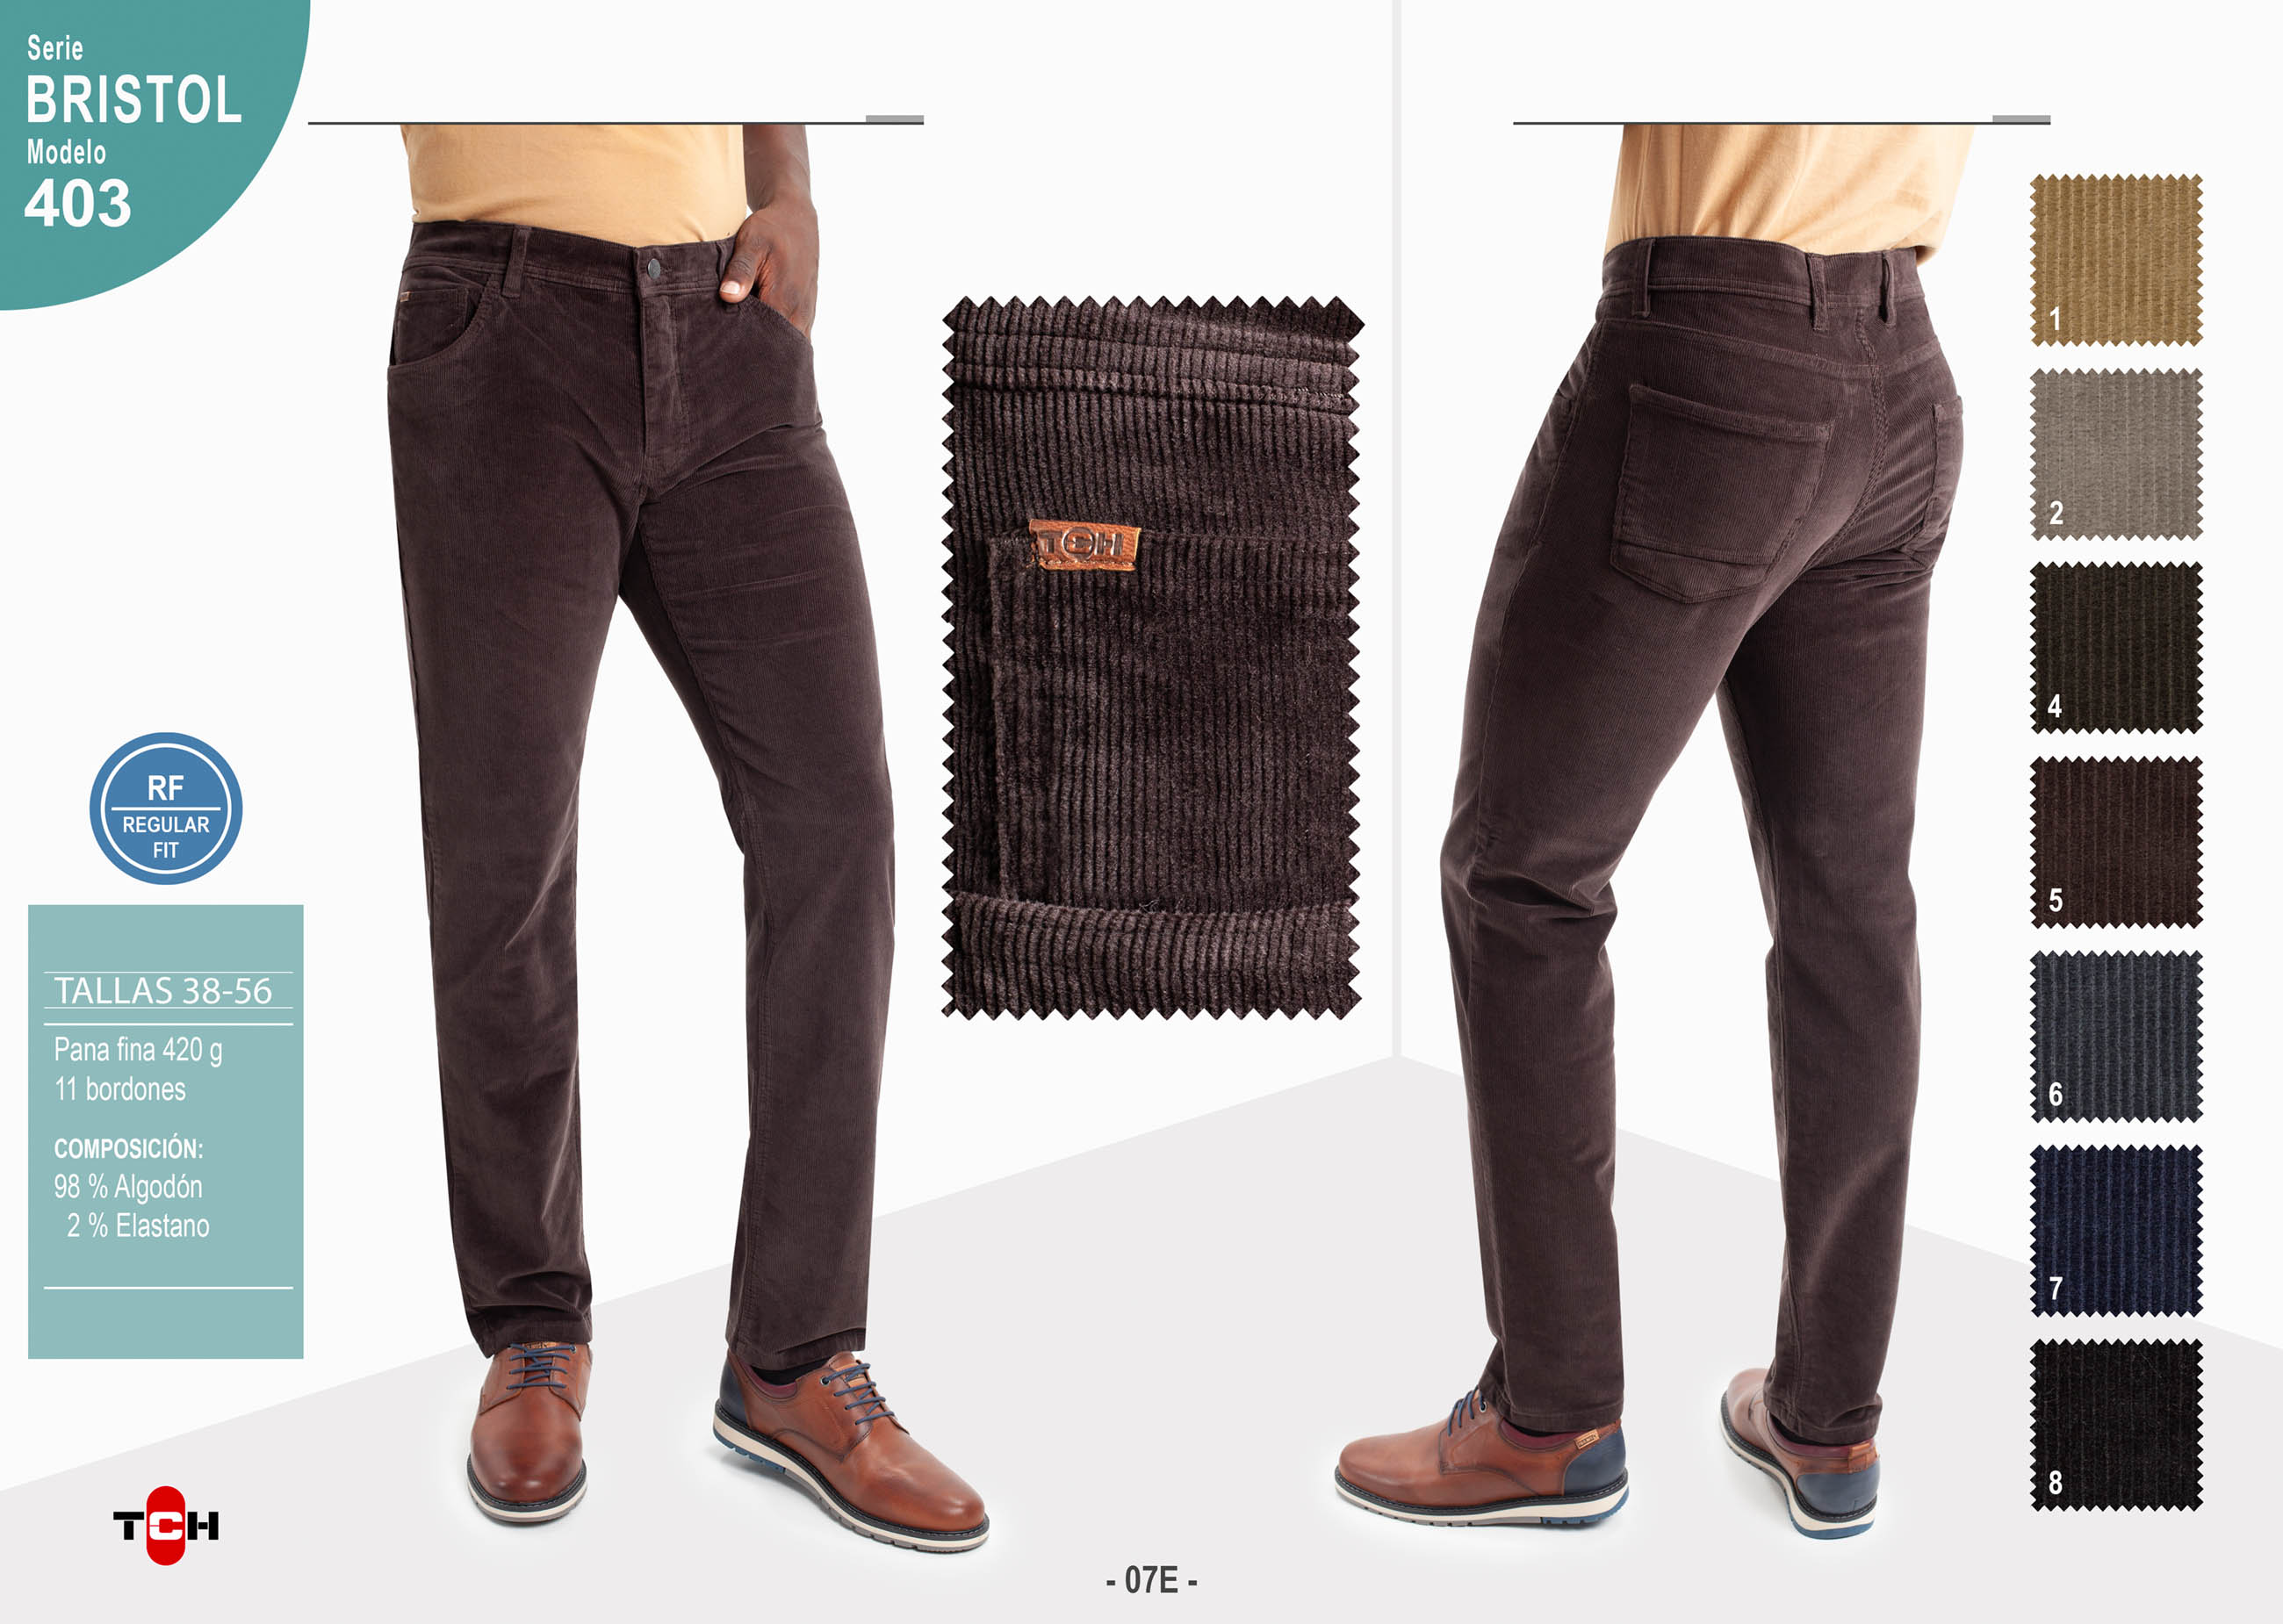 Comprar Pantalón TCH Jeans 5 Bolsillos fabricado en Pana fina elástica de colores en España